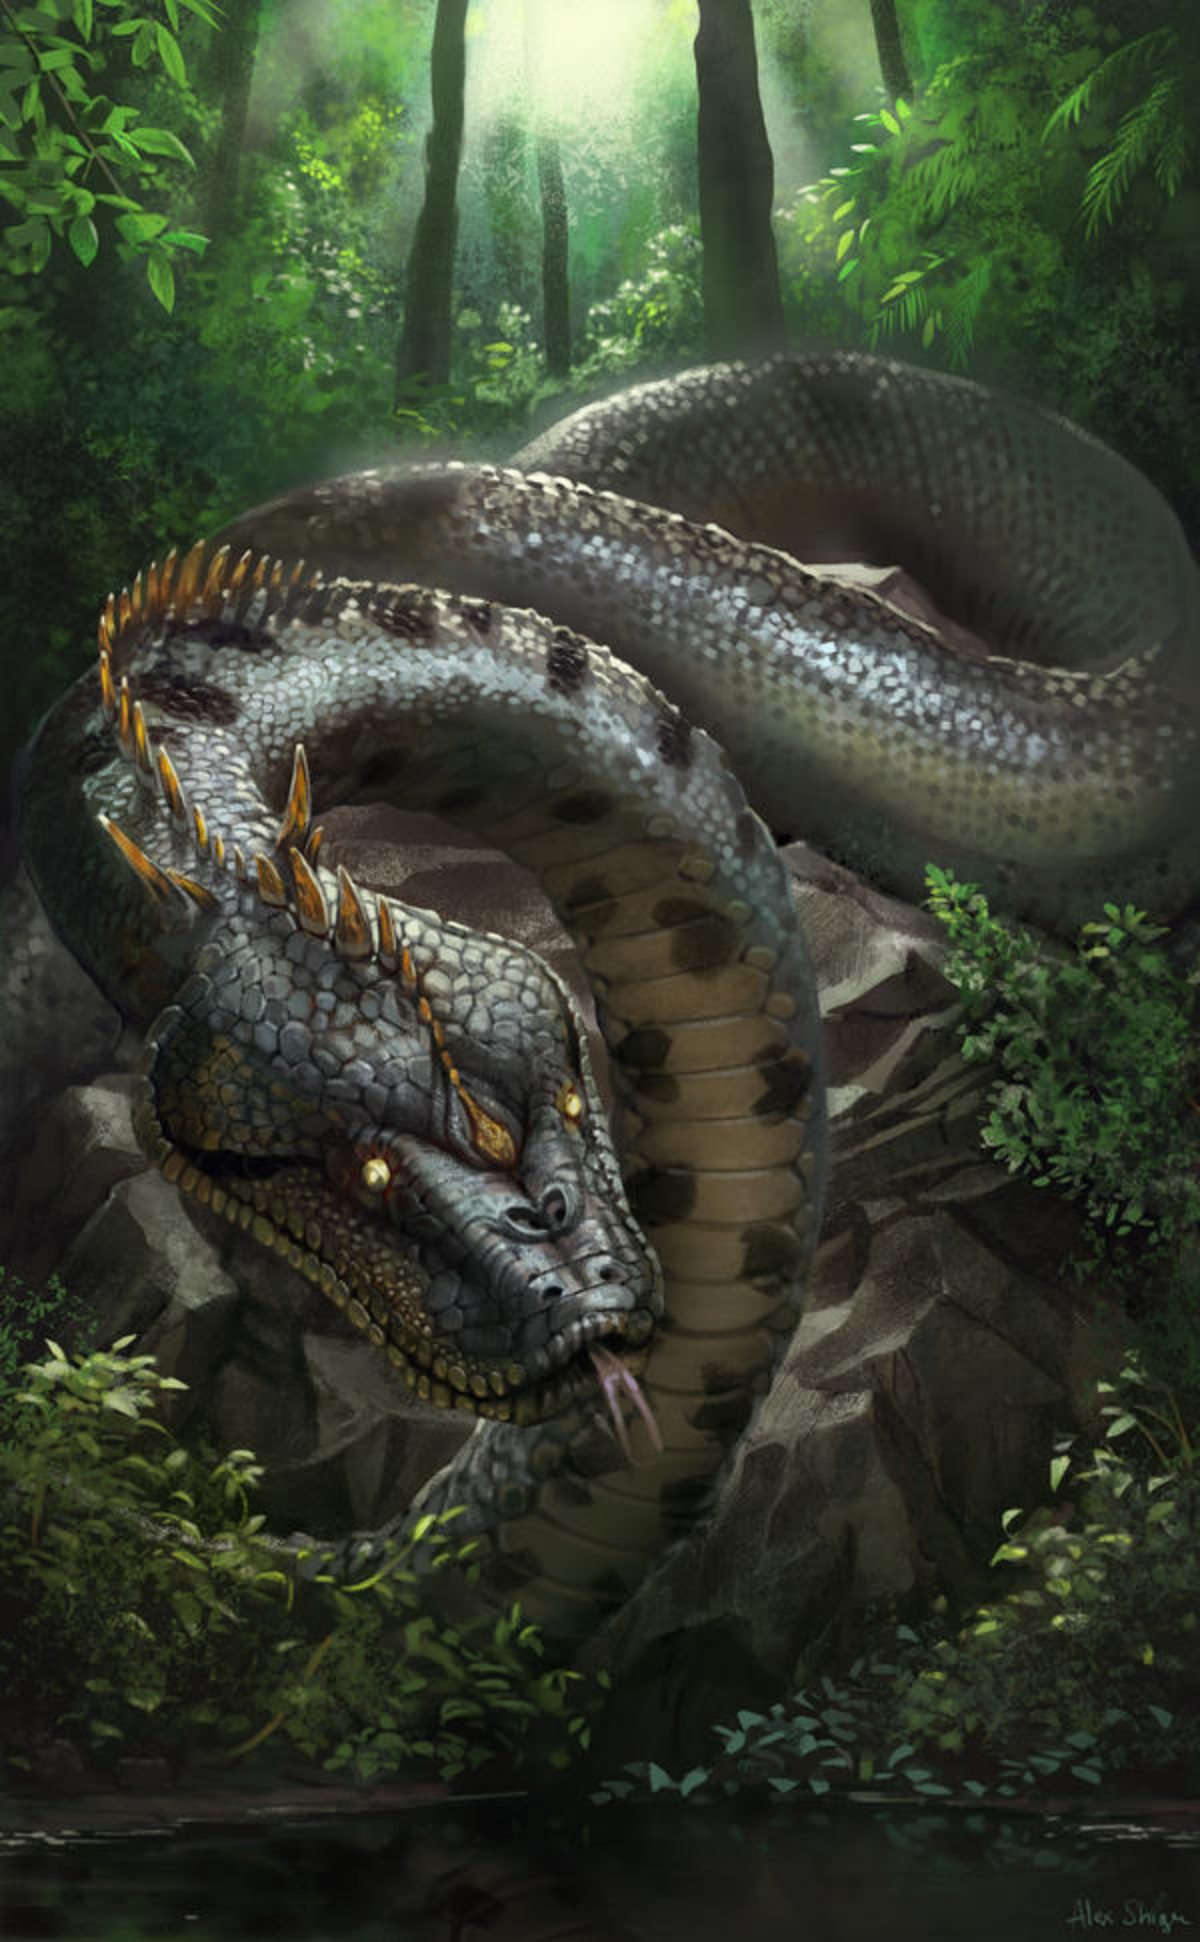 Autohtoni narodi Amazone često su govorili o Yacumami — vodenoj zmiji.